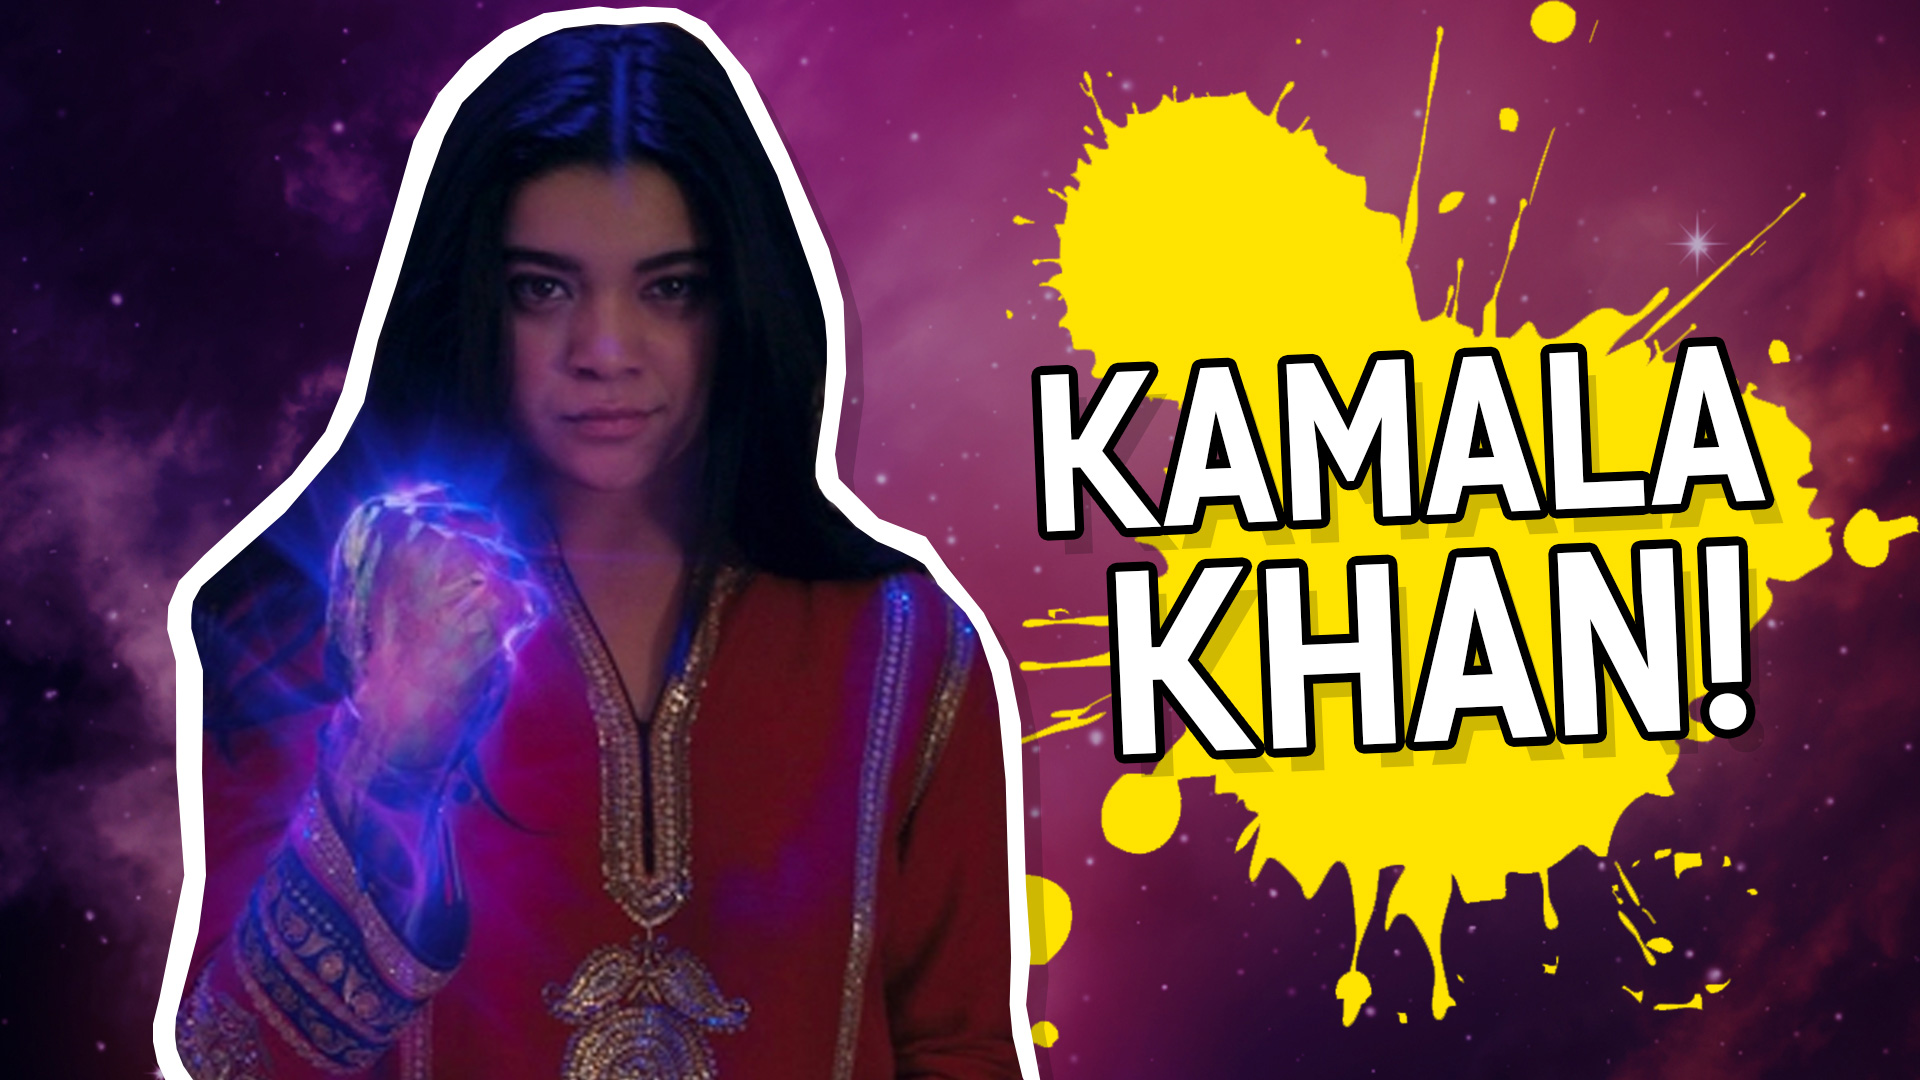 You are: Kamala Khan